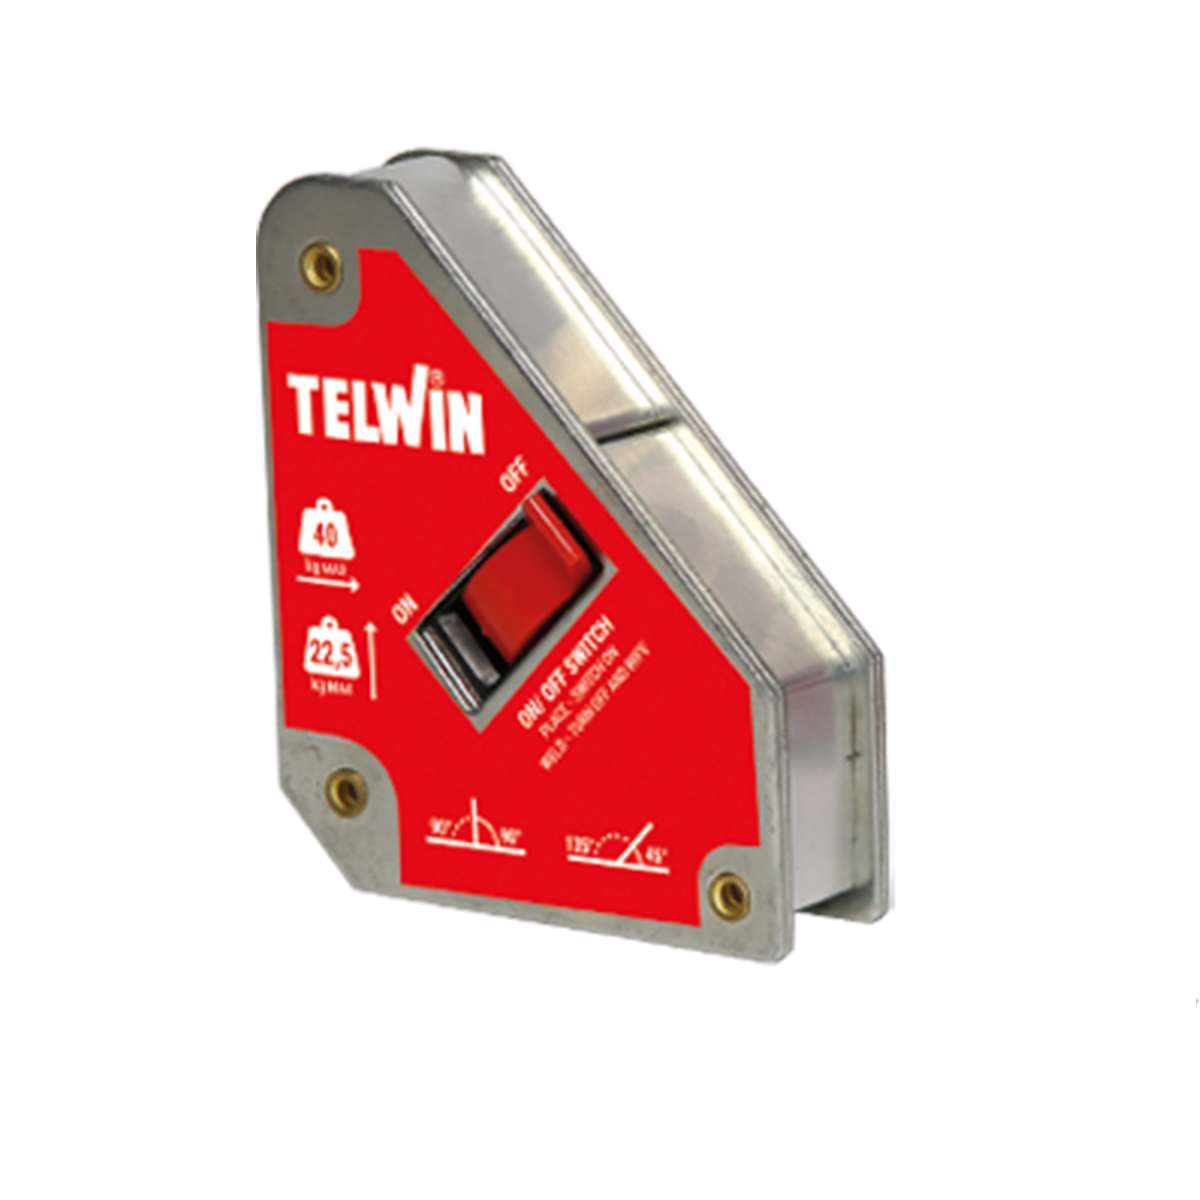 Posizionatore Magnetico con funzione ON/OFF 40 KG BL - Telwin - 804255